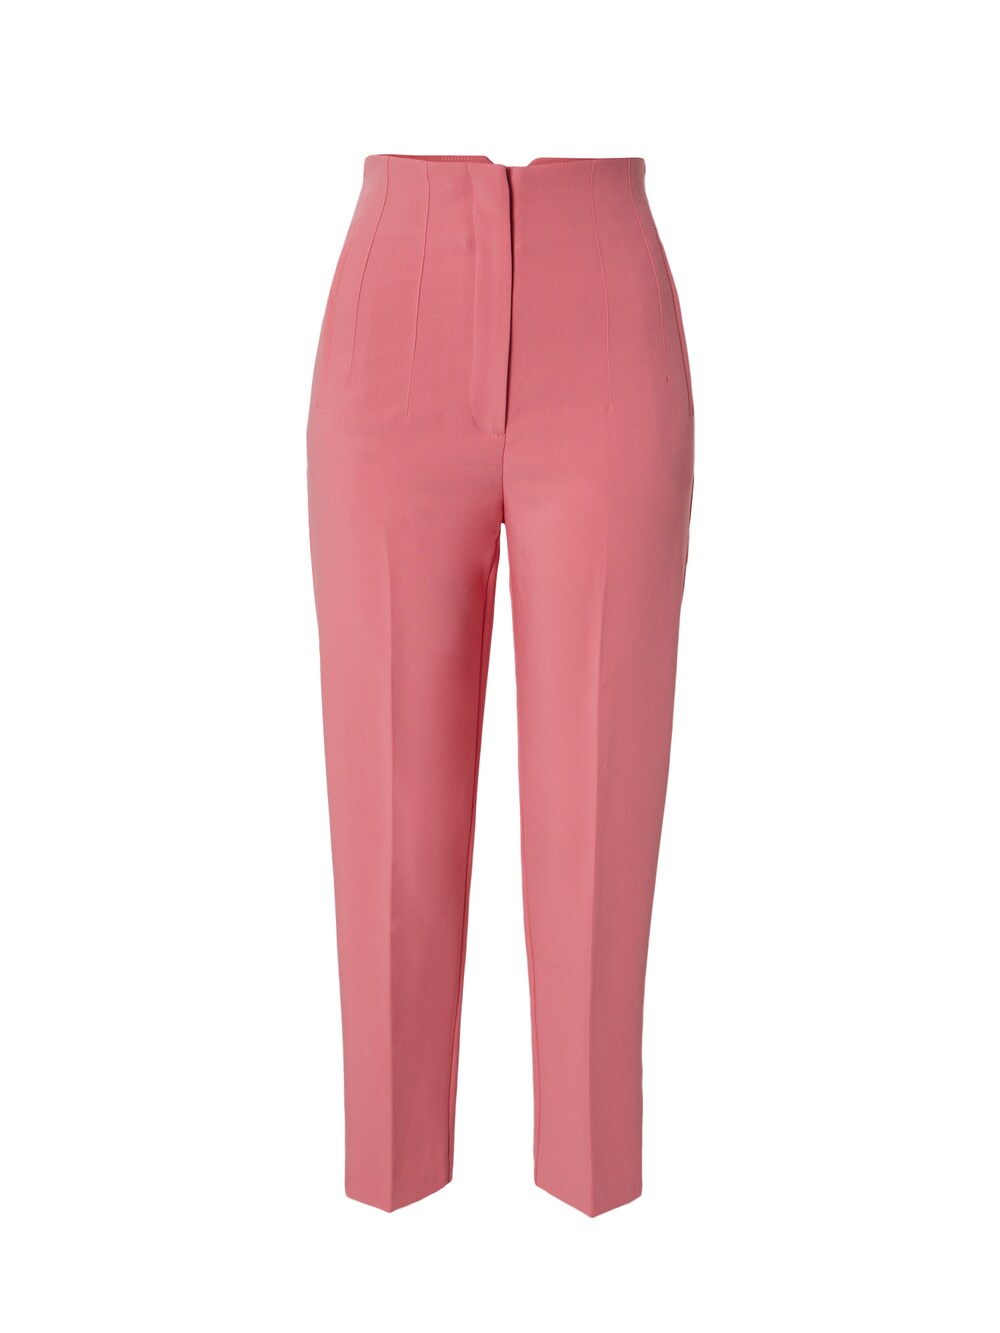 Обычные плиссированные брюки Edited Charlotta, розовый обычные плиссированные брюки edited leona оливковый